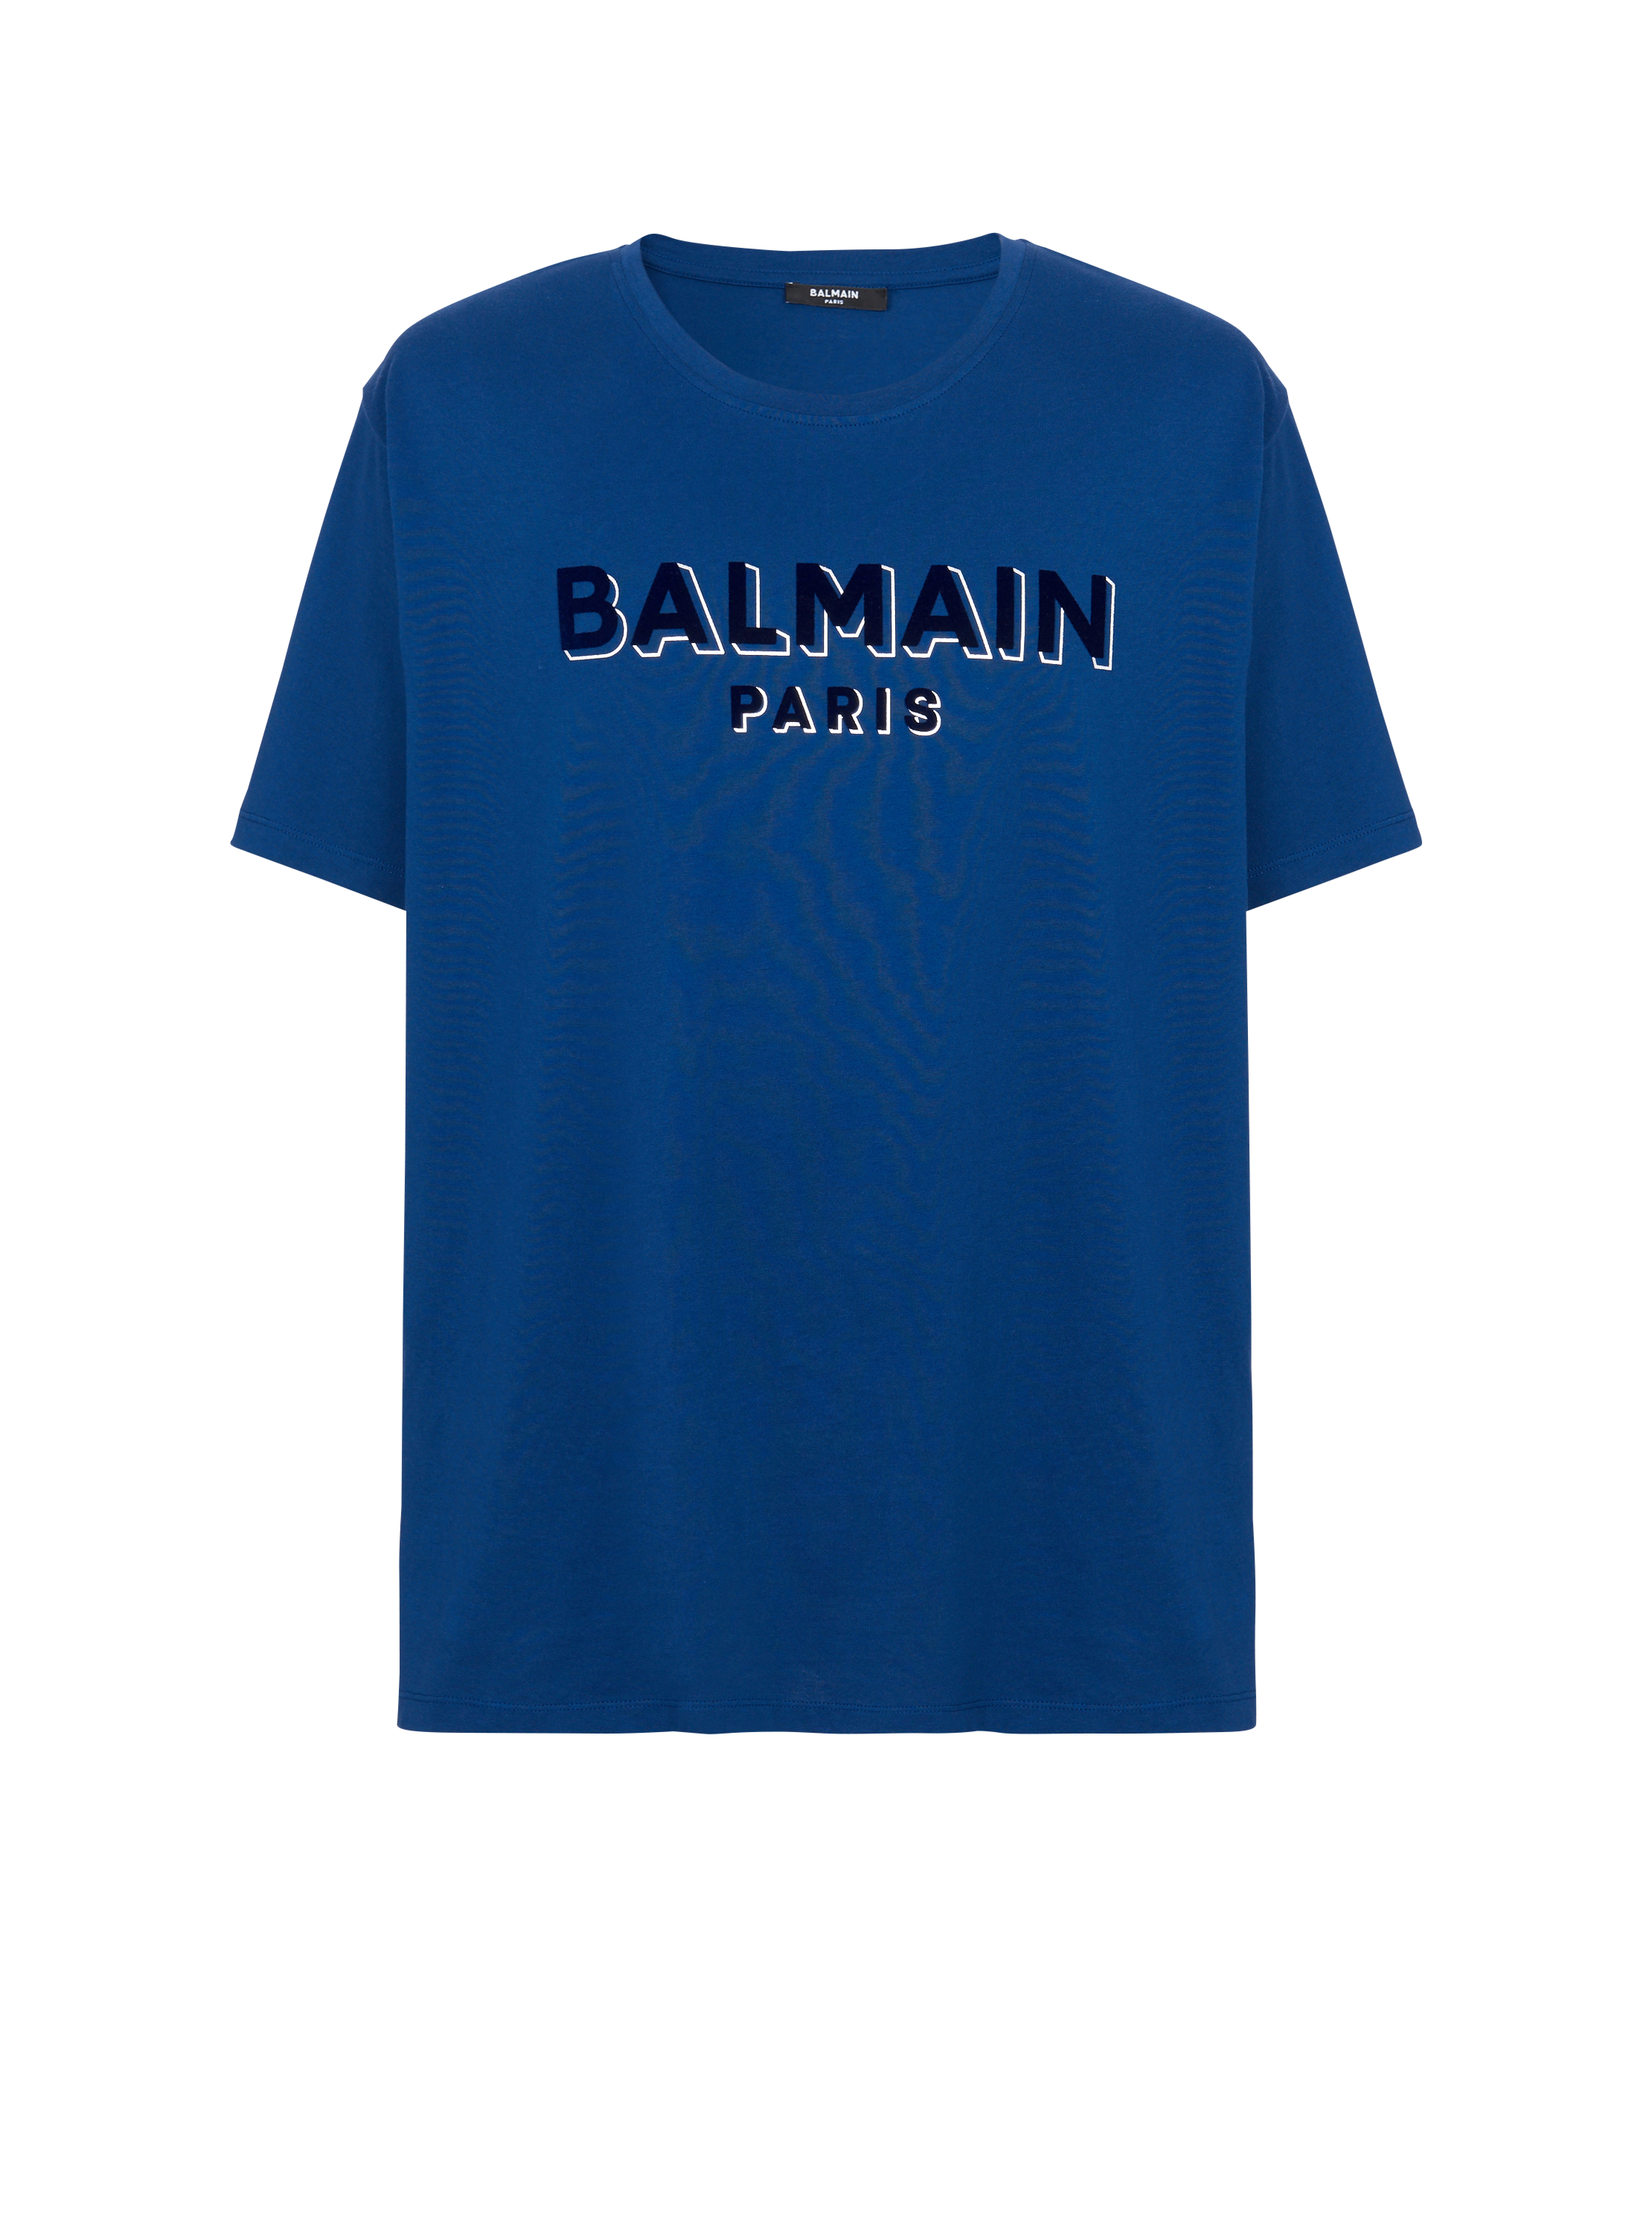 Camiseta con logotipo de Balmain metalizado serigrafiado, azul marino, hi-res